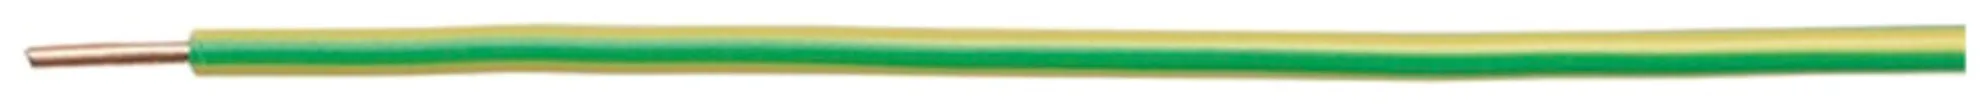 Filo N H07Z1-U senza alogeno 1.5mm² 450/750V verde-giallo Cca 